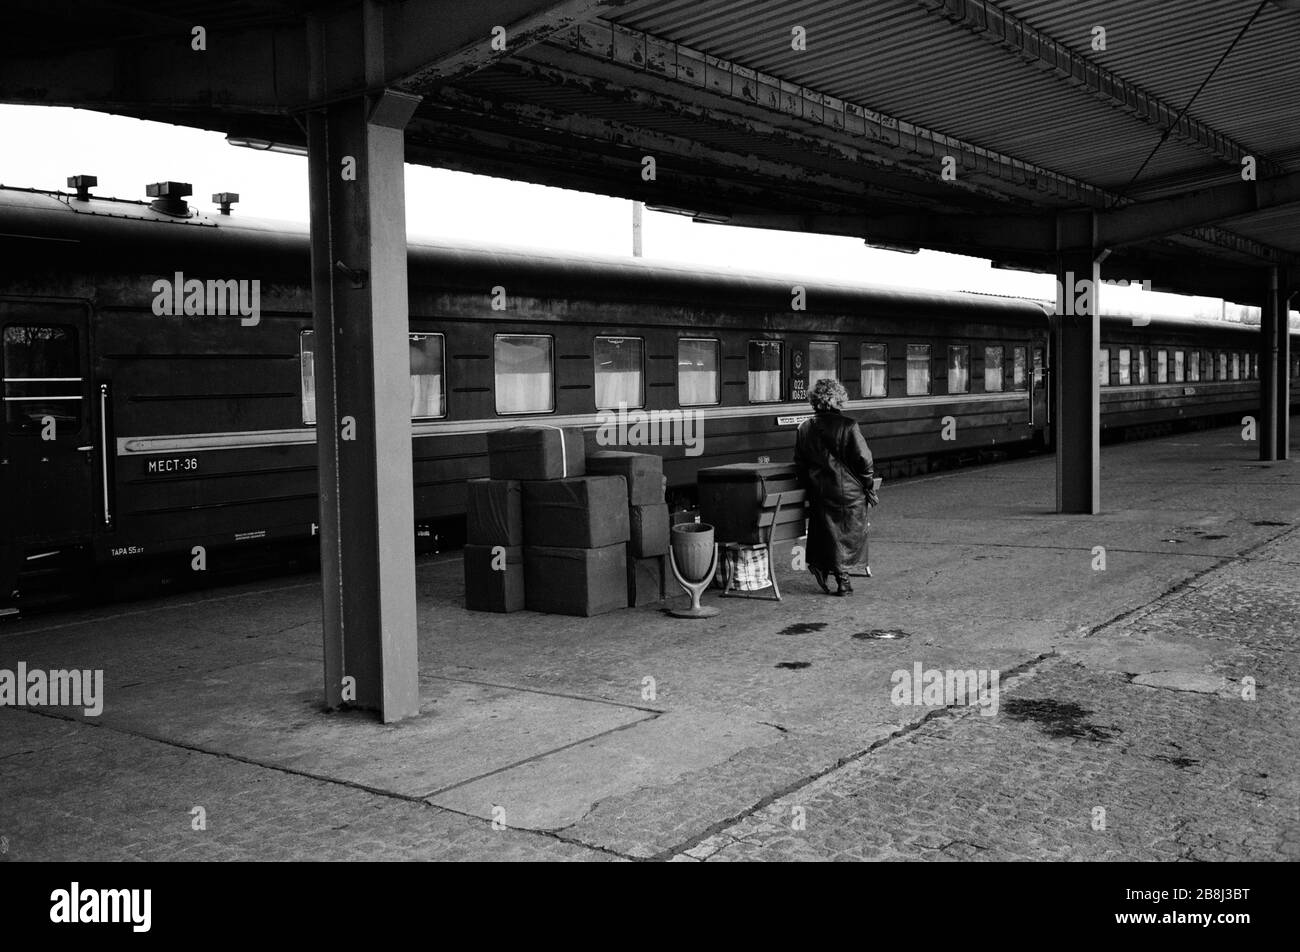 Eine Russin wartet mit ihrem Gepäck auf dem Bahnsteig des Bahnhofs Wuensdorf südlich von Berlin auf den Start in einen Zug nach Moskau, da die Rote Armee nach dem Fall der Berliner Mauer Deutschland verlässt. Die Berliner Mauer war eine von der Deutschen Demokratischen Republik (DDR, Ostdeutschland) am 13. August 1961 errichtete Barriere, die West-Berlin von der umliegenden DDR und von Ost-Berlin völlig abgrenzte. Die Mauer wurde am 9. November 1989 die freie Personenbewegung von Ost nach West erlaubt. Stockfoto